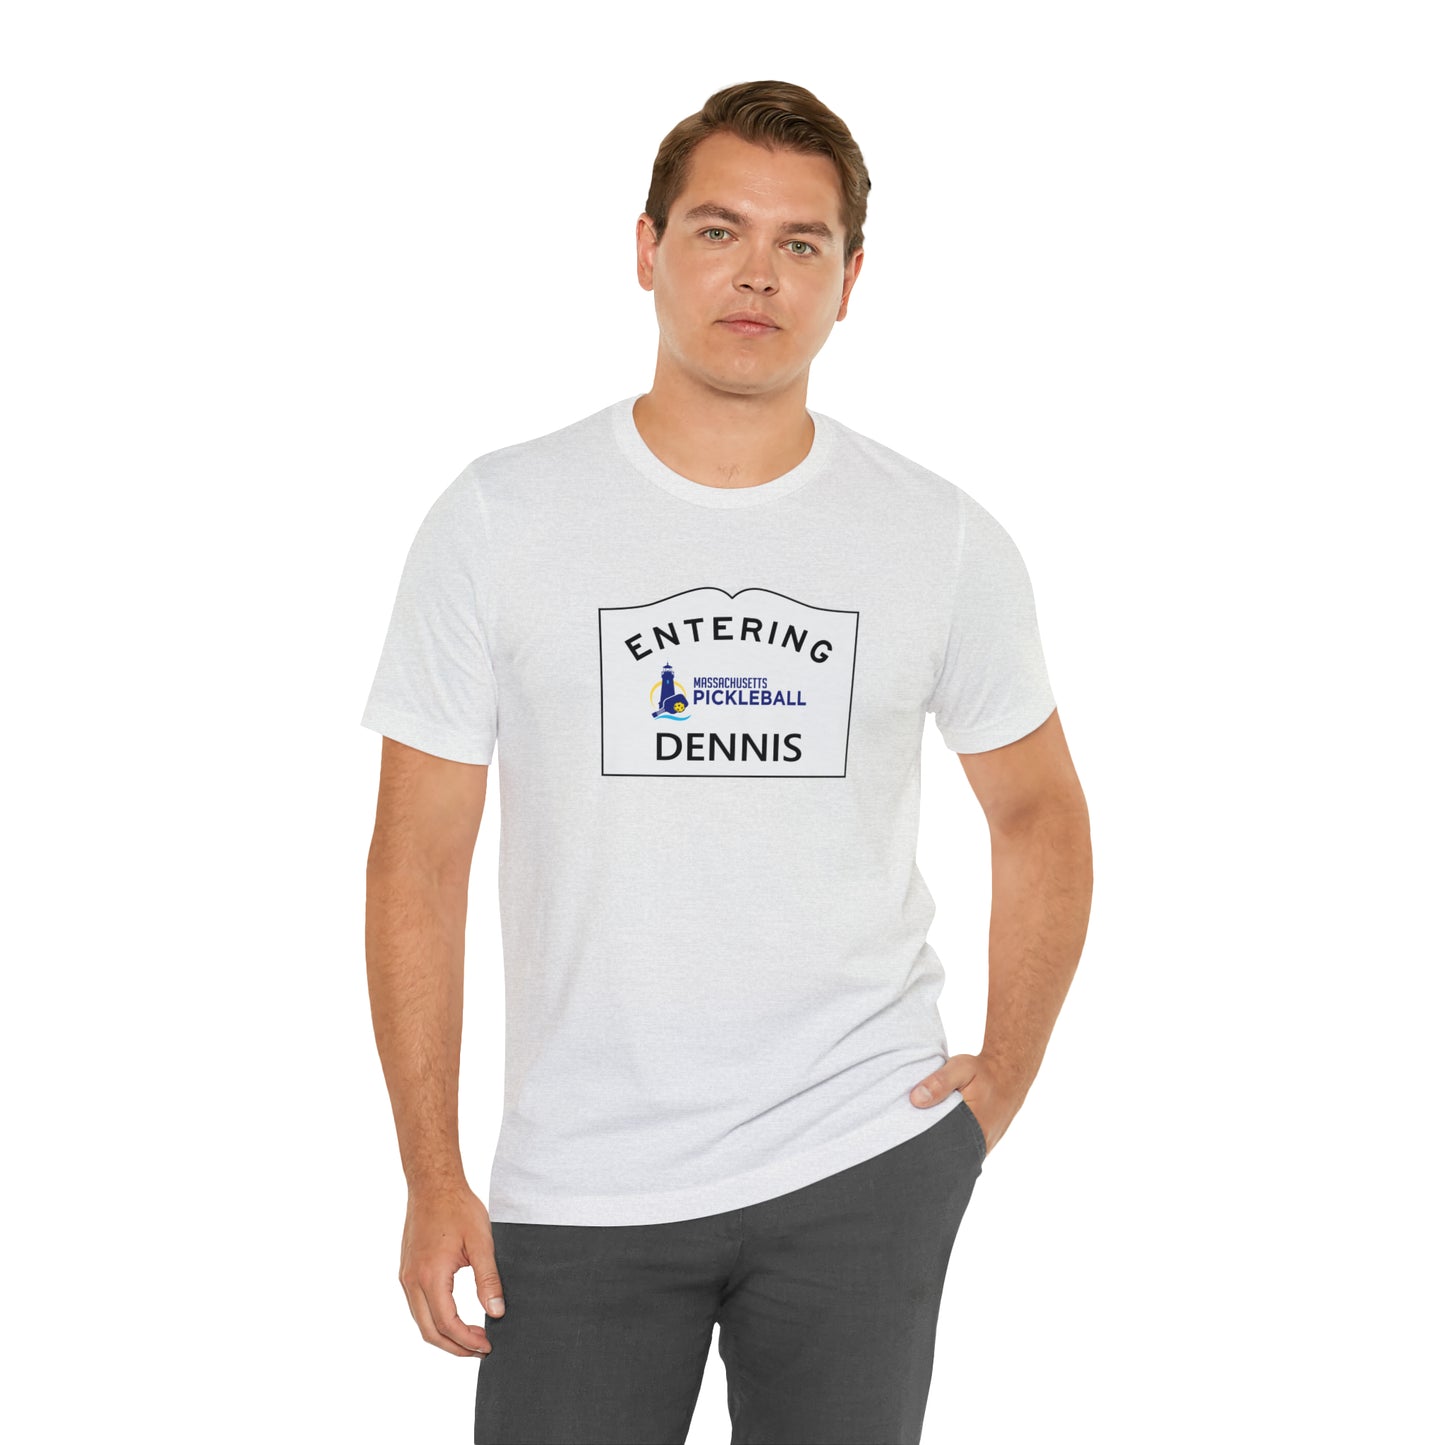 Dennis, Mass Pickleball Short Sleeve T-Shirt